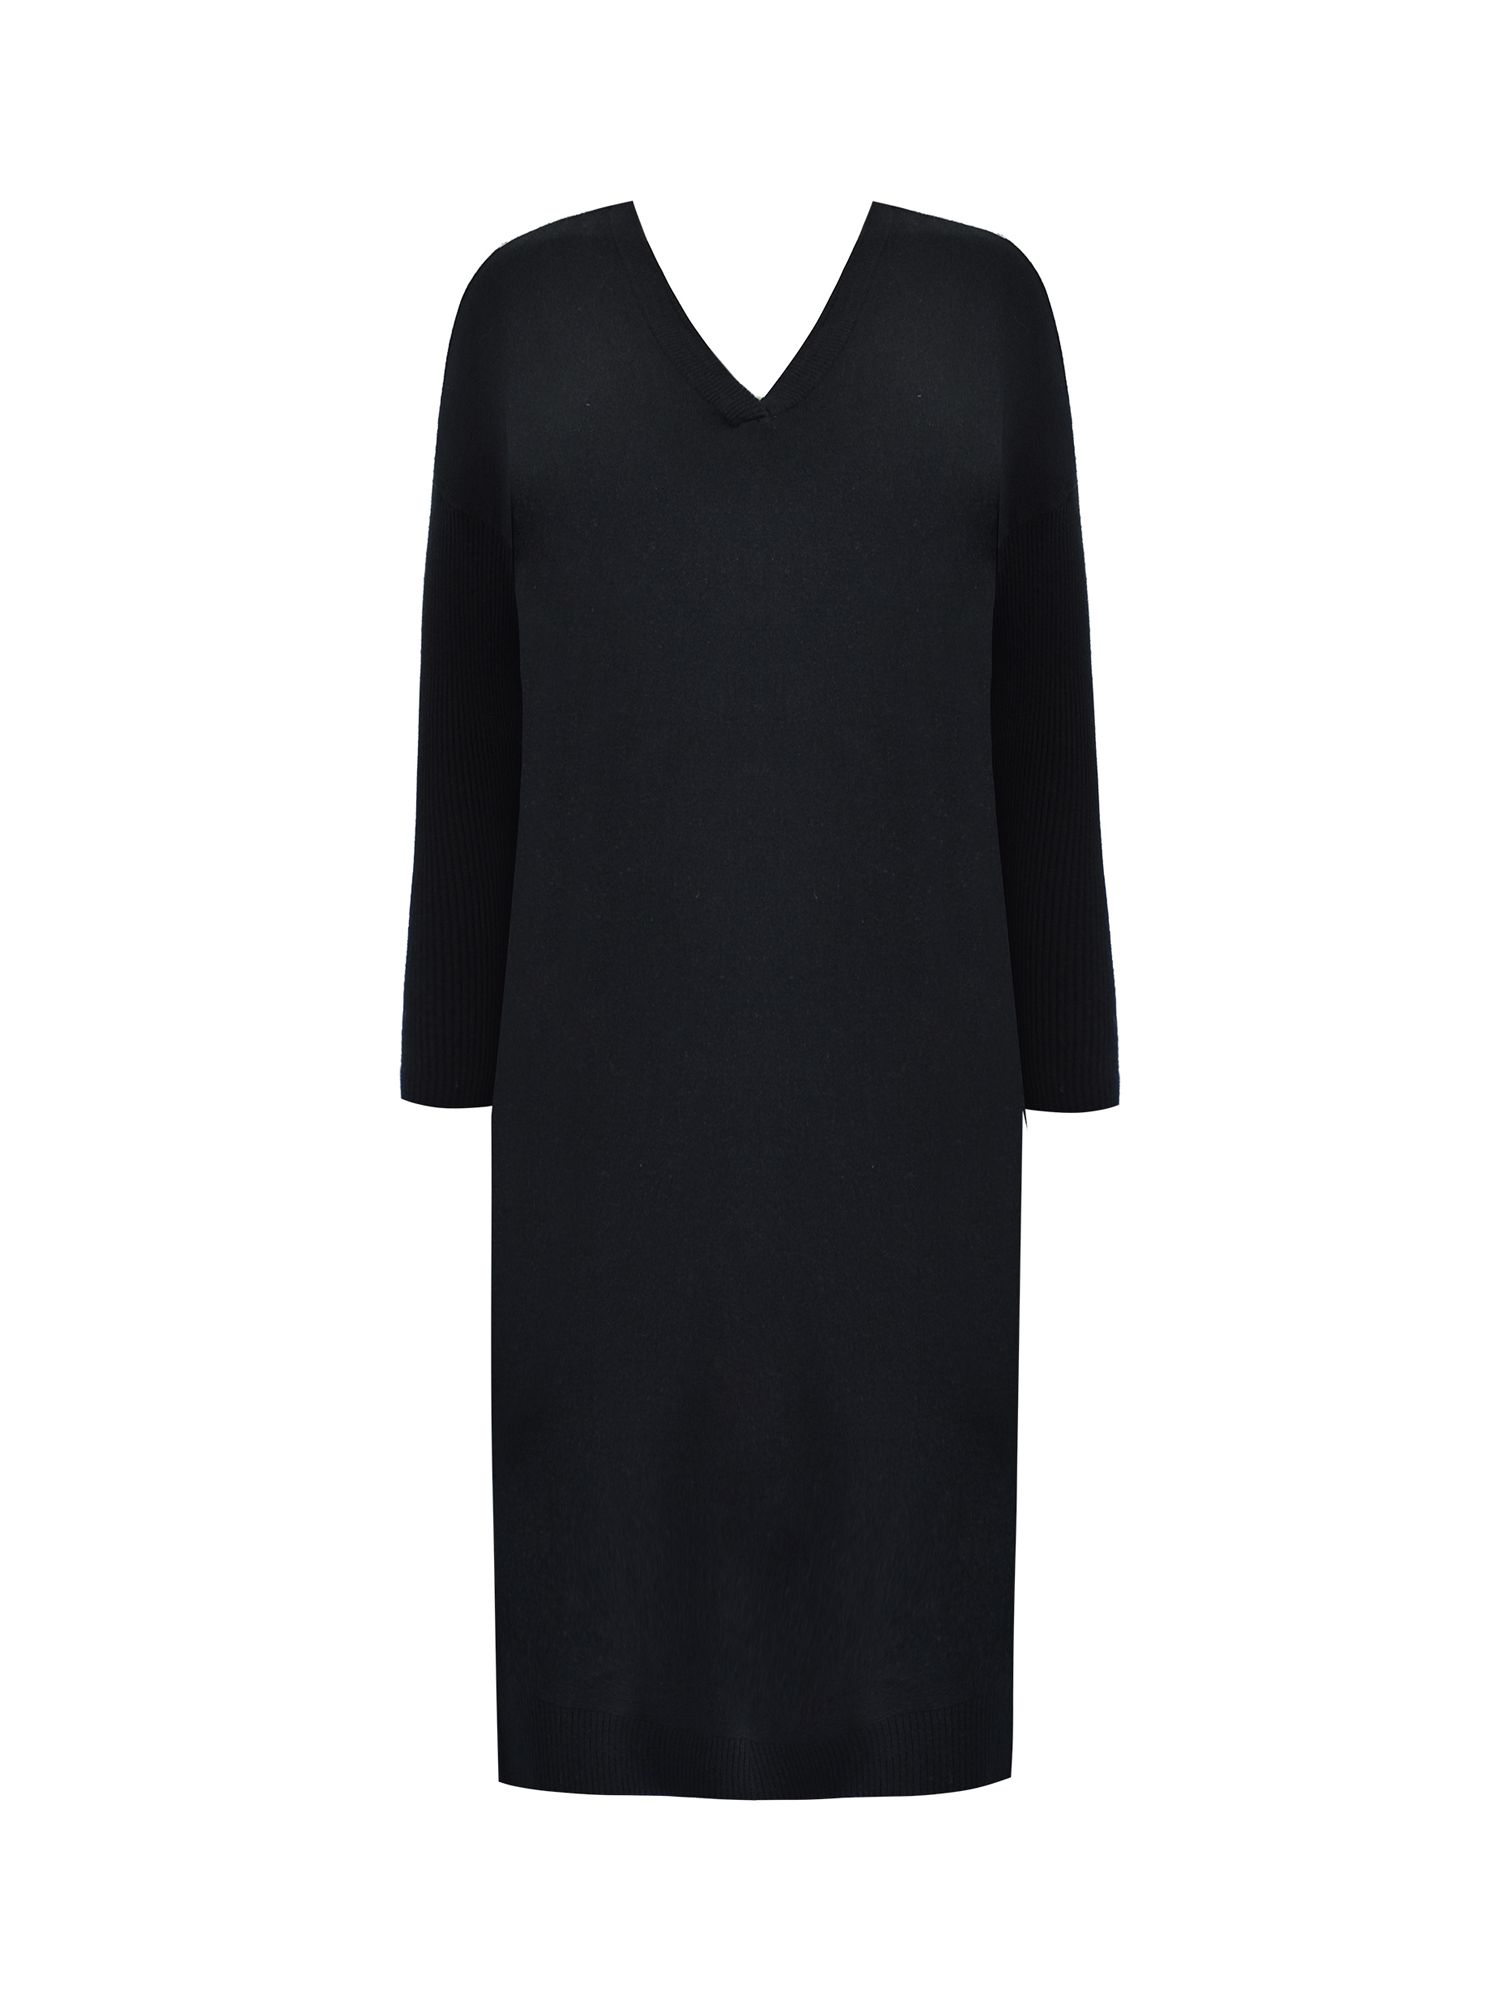 Live Unlimited Curve Cashmere Blend V-neck Dress, Black at John Lewis ...